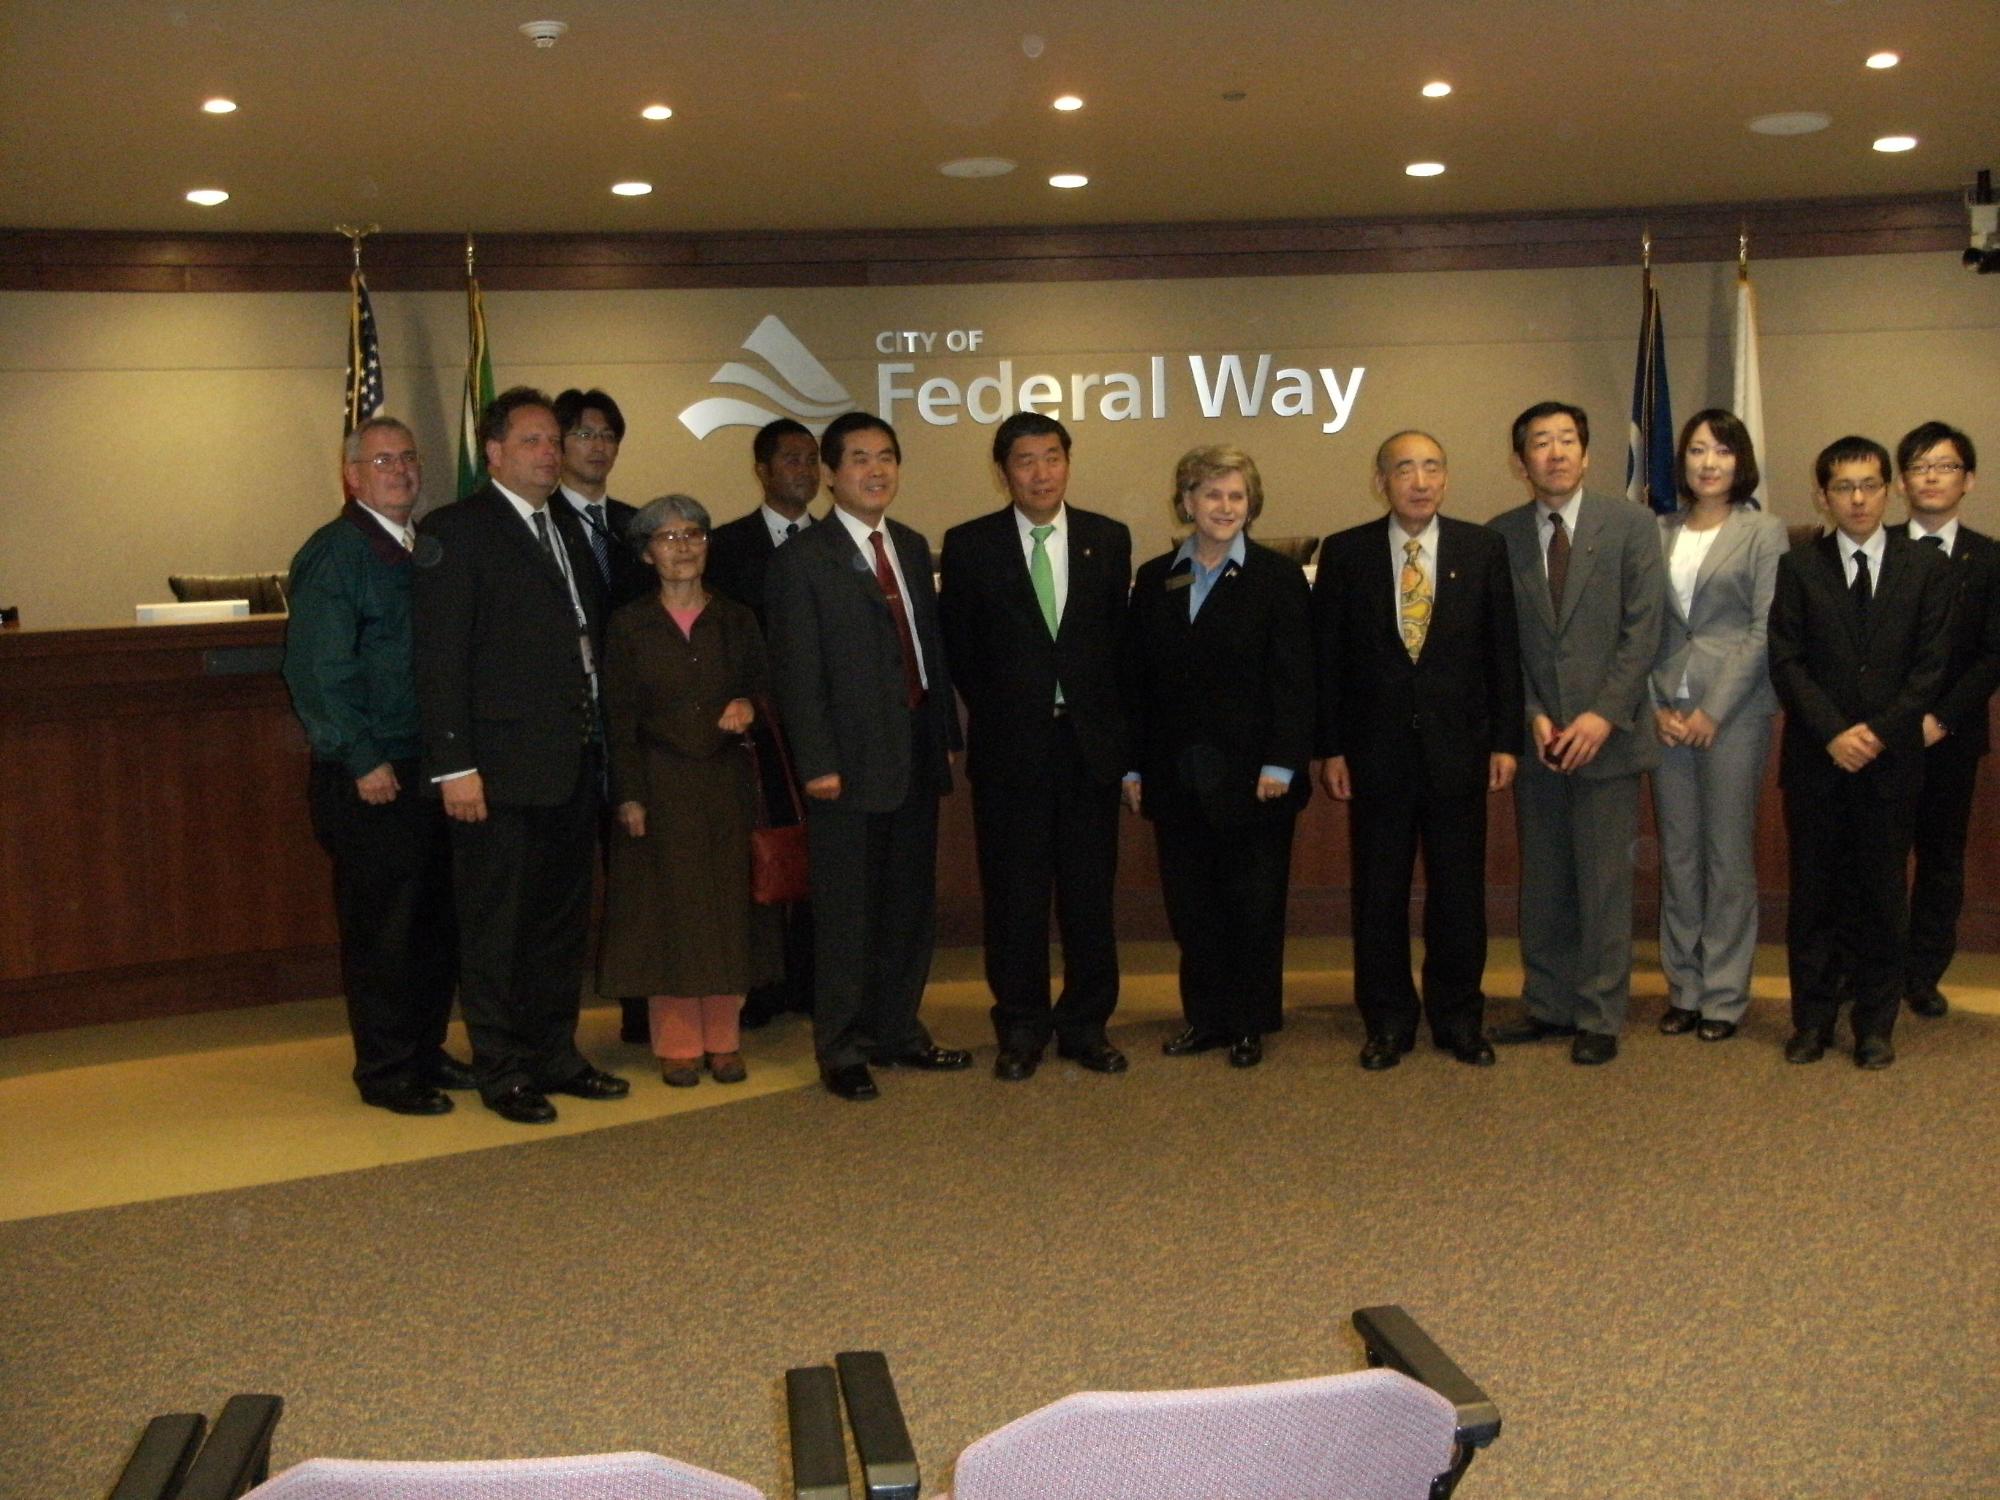 八戸市訪問団がフェデラルウェイ市長を囲んでの記念撮影